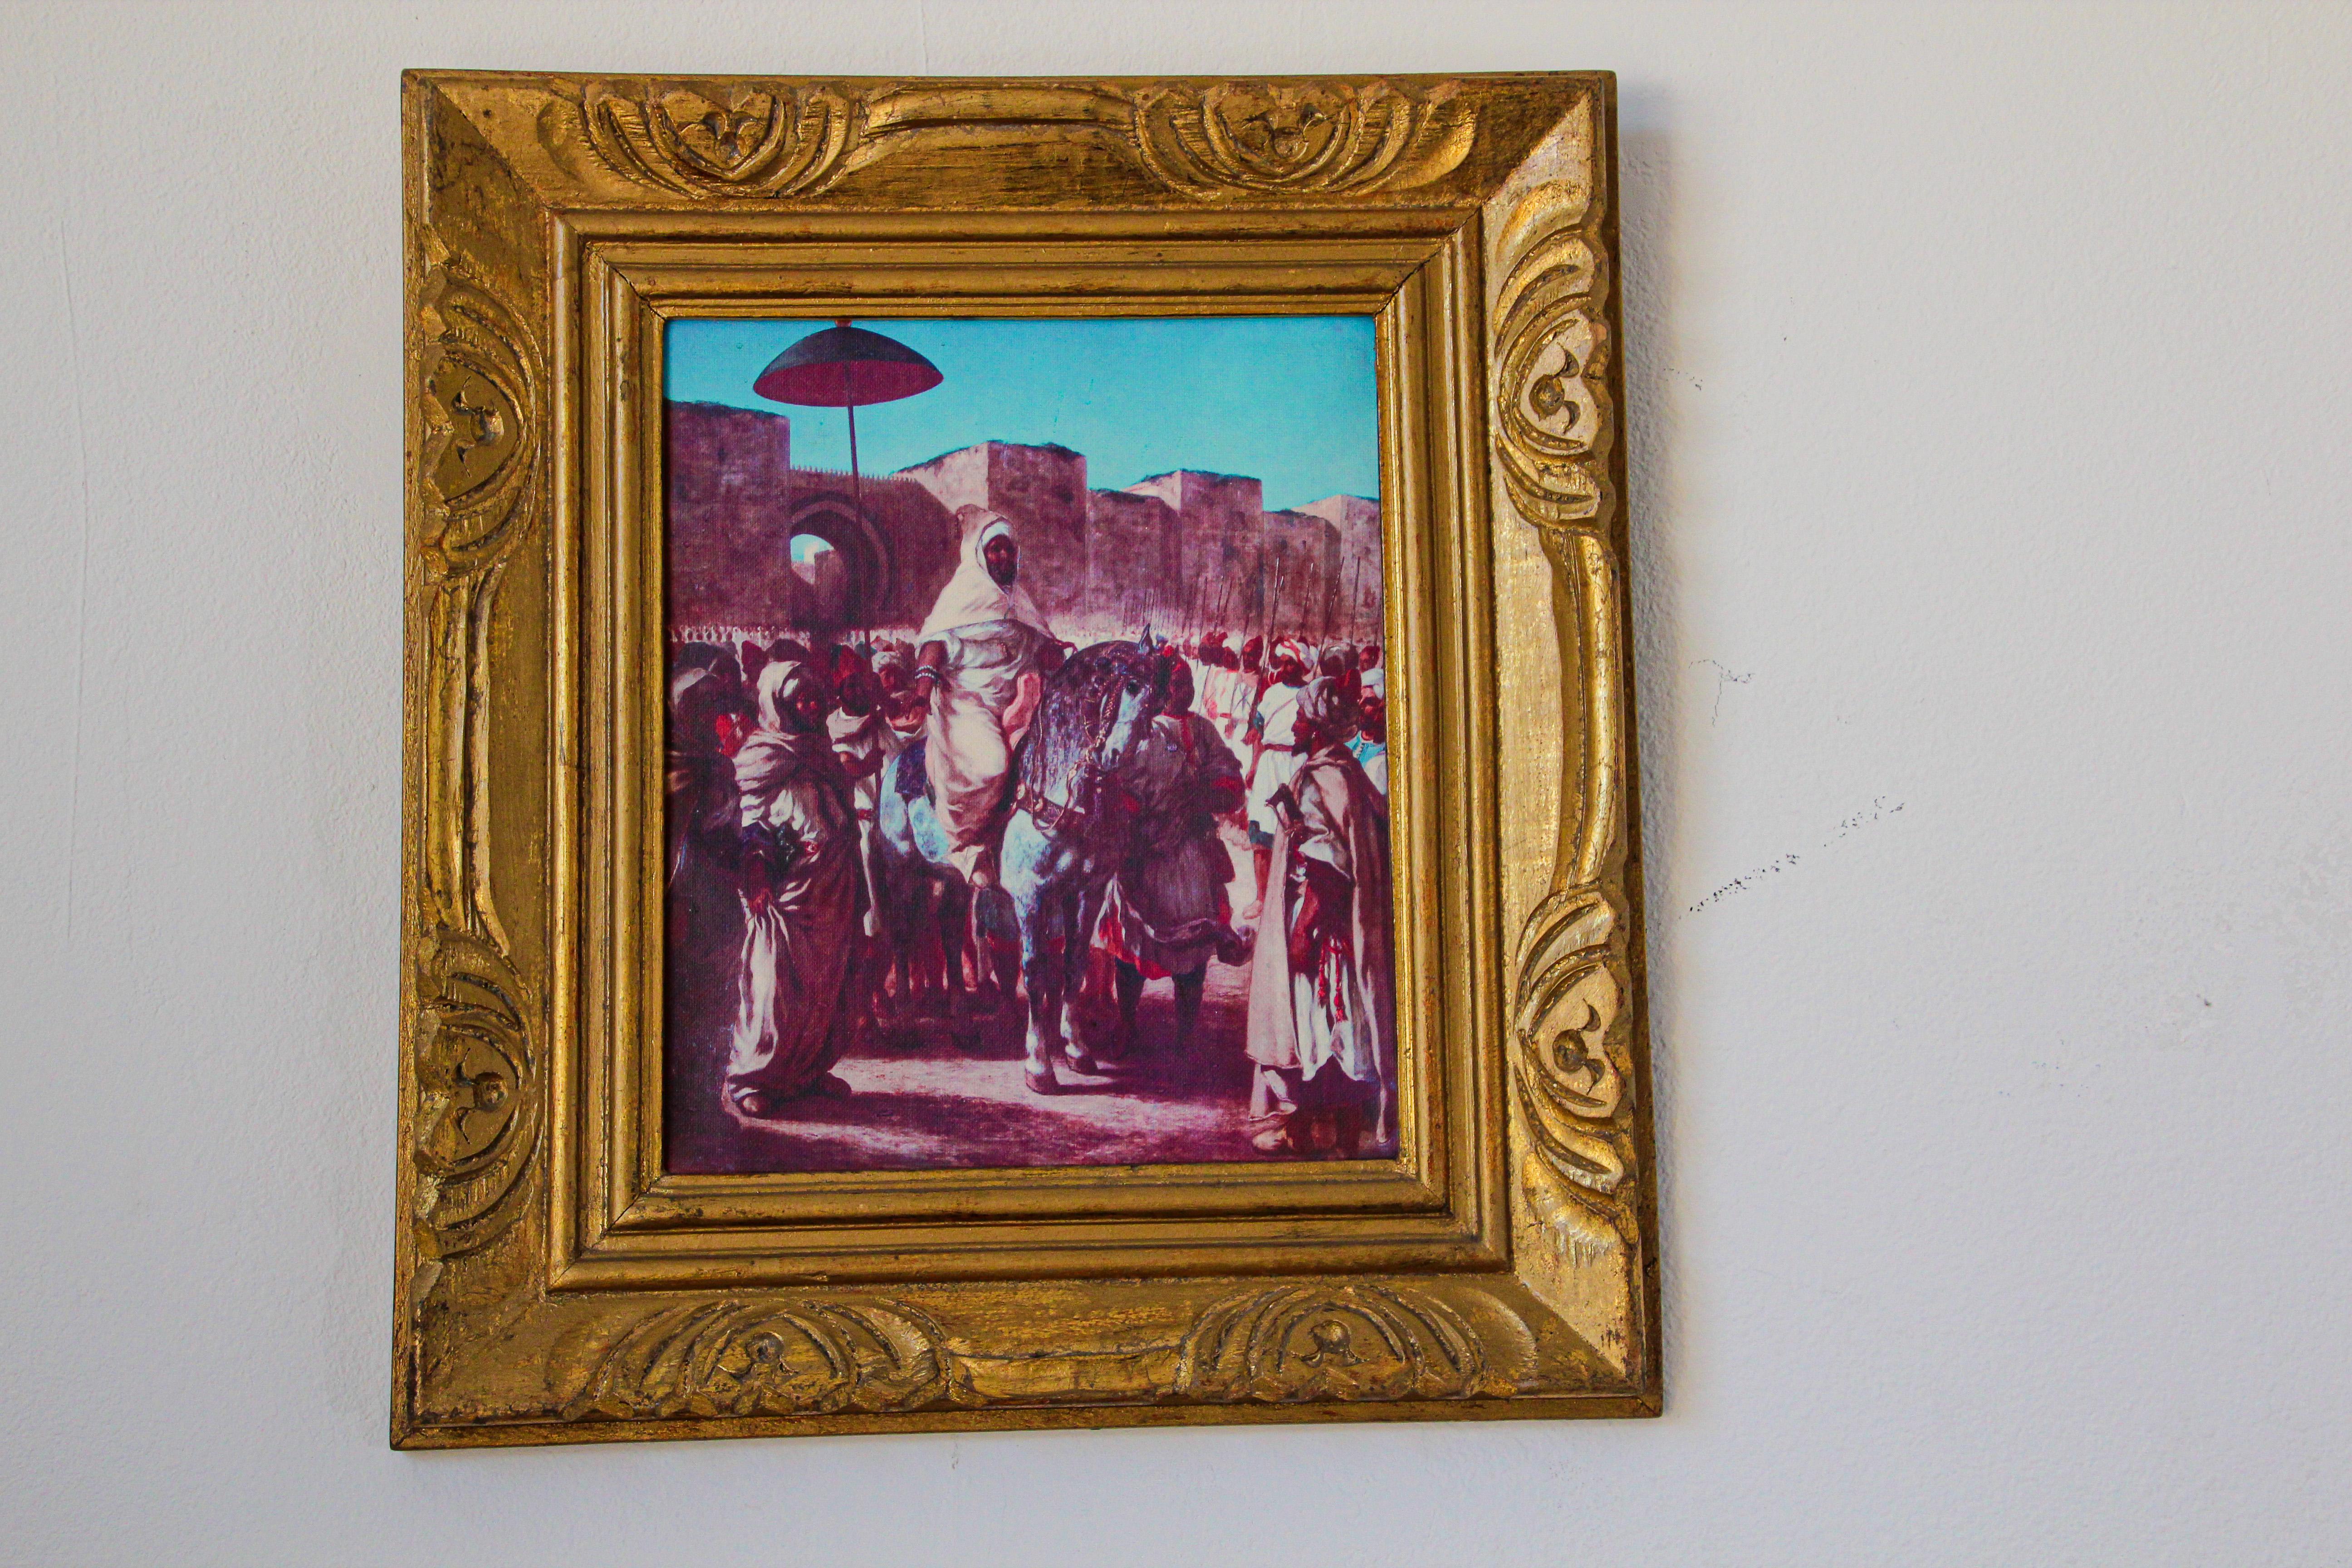 Scène marocaine orientaliste, peinture giclée du roi du Maroc.
Reproduction d'un tableau orientaliste français représentant Mohamed V revenant d'exil, avec un cadre classique en bois.
Le cadre est ancien, la peinture est une nouvelle giclée sur